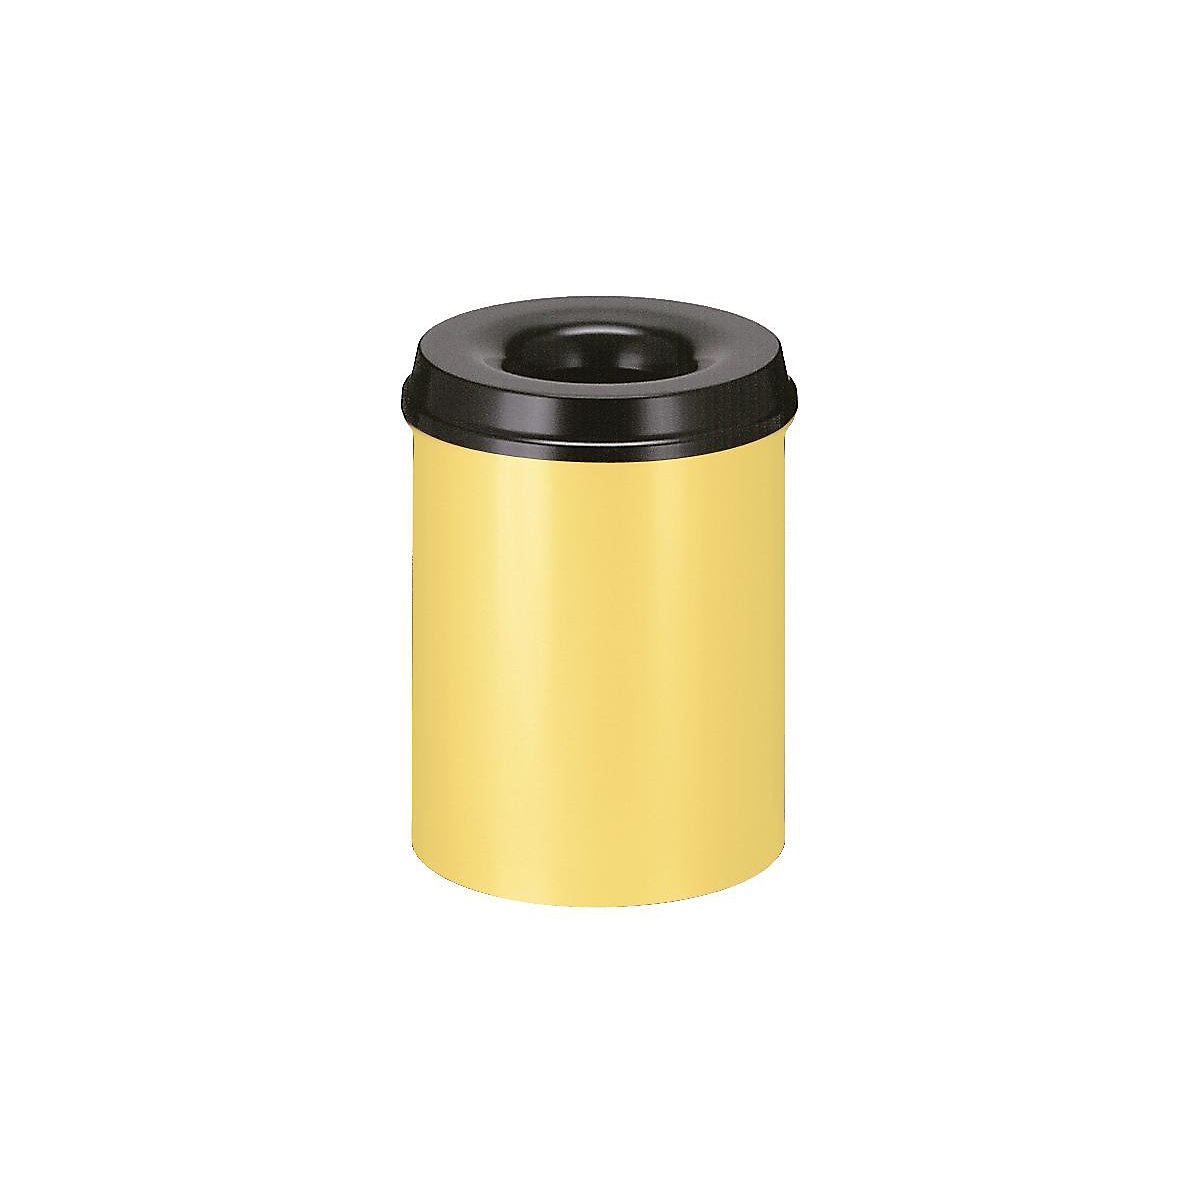 Sigurnosna kanta za papir, čelik, samogasiva, volumen 15 l, VxØ 360 x 255 mm, korpus u žutoj boji / vrh za gašenje u crnoj boji-12